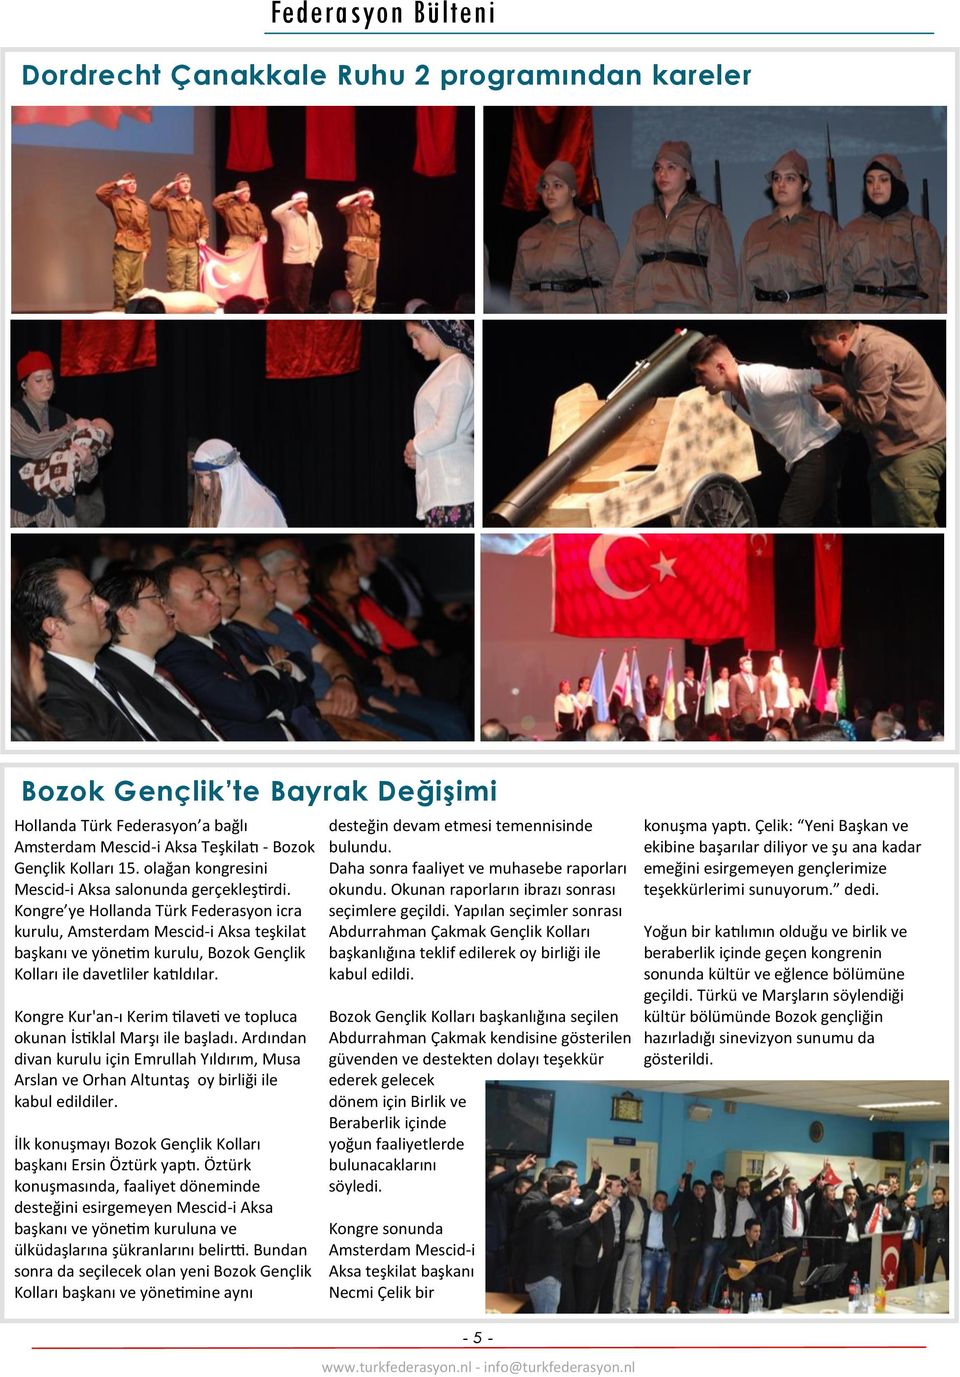 Kongre ye Hollanda Türk Federasyon icra kurulu, Amsterdam Mescid-i Aksa teşkilat başkanı ve yönetim kurulu, Bozok Gençlik Kolları ile davetliler katıldılar.